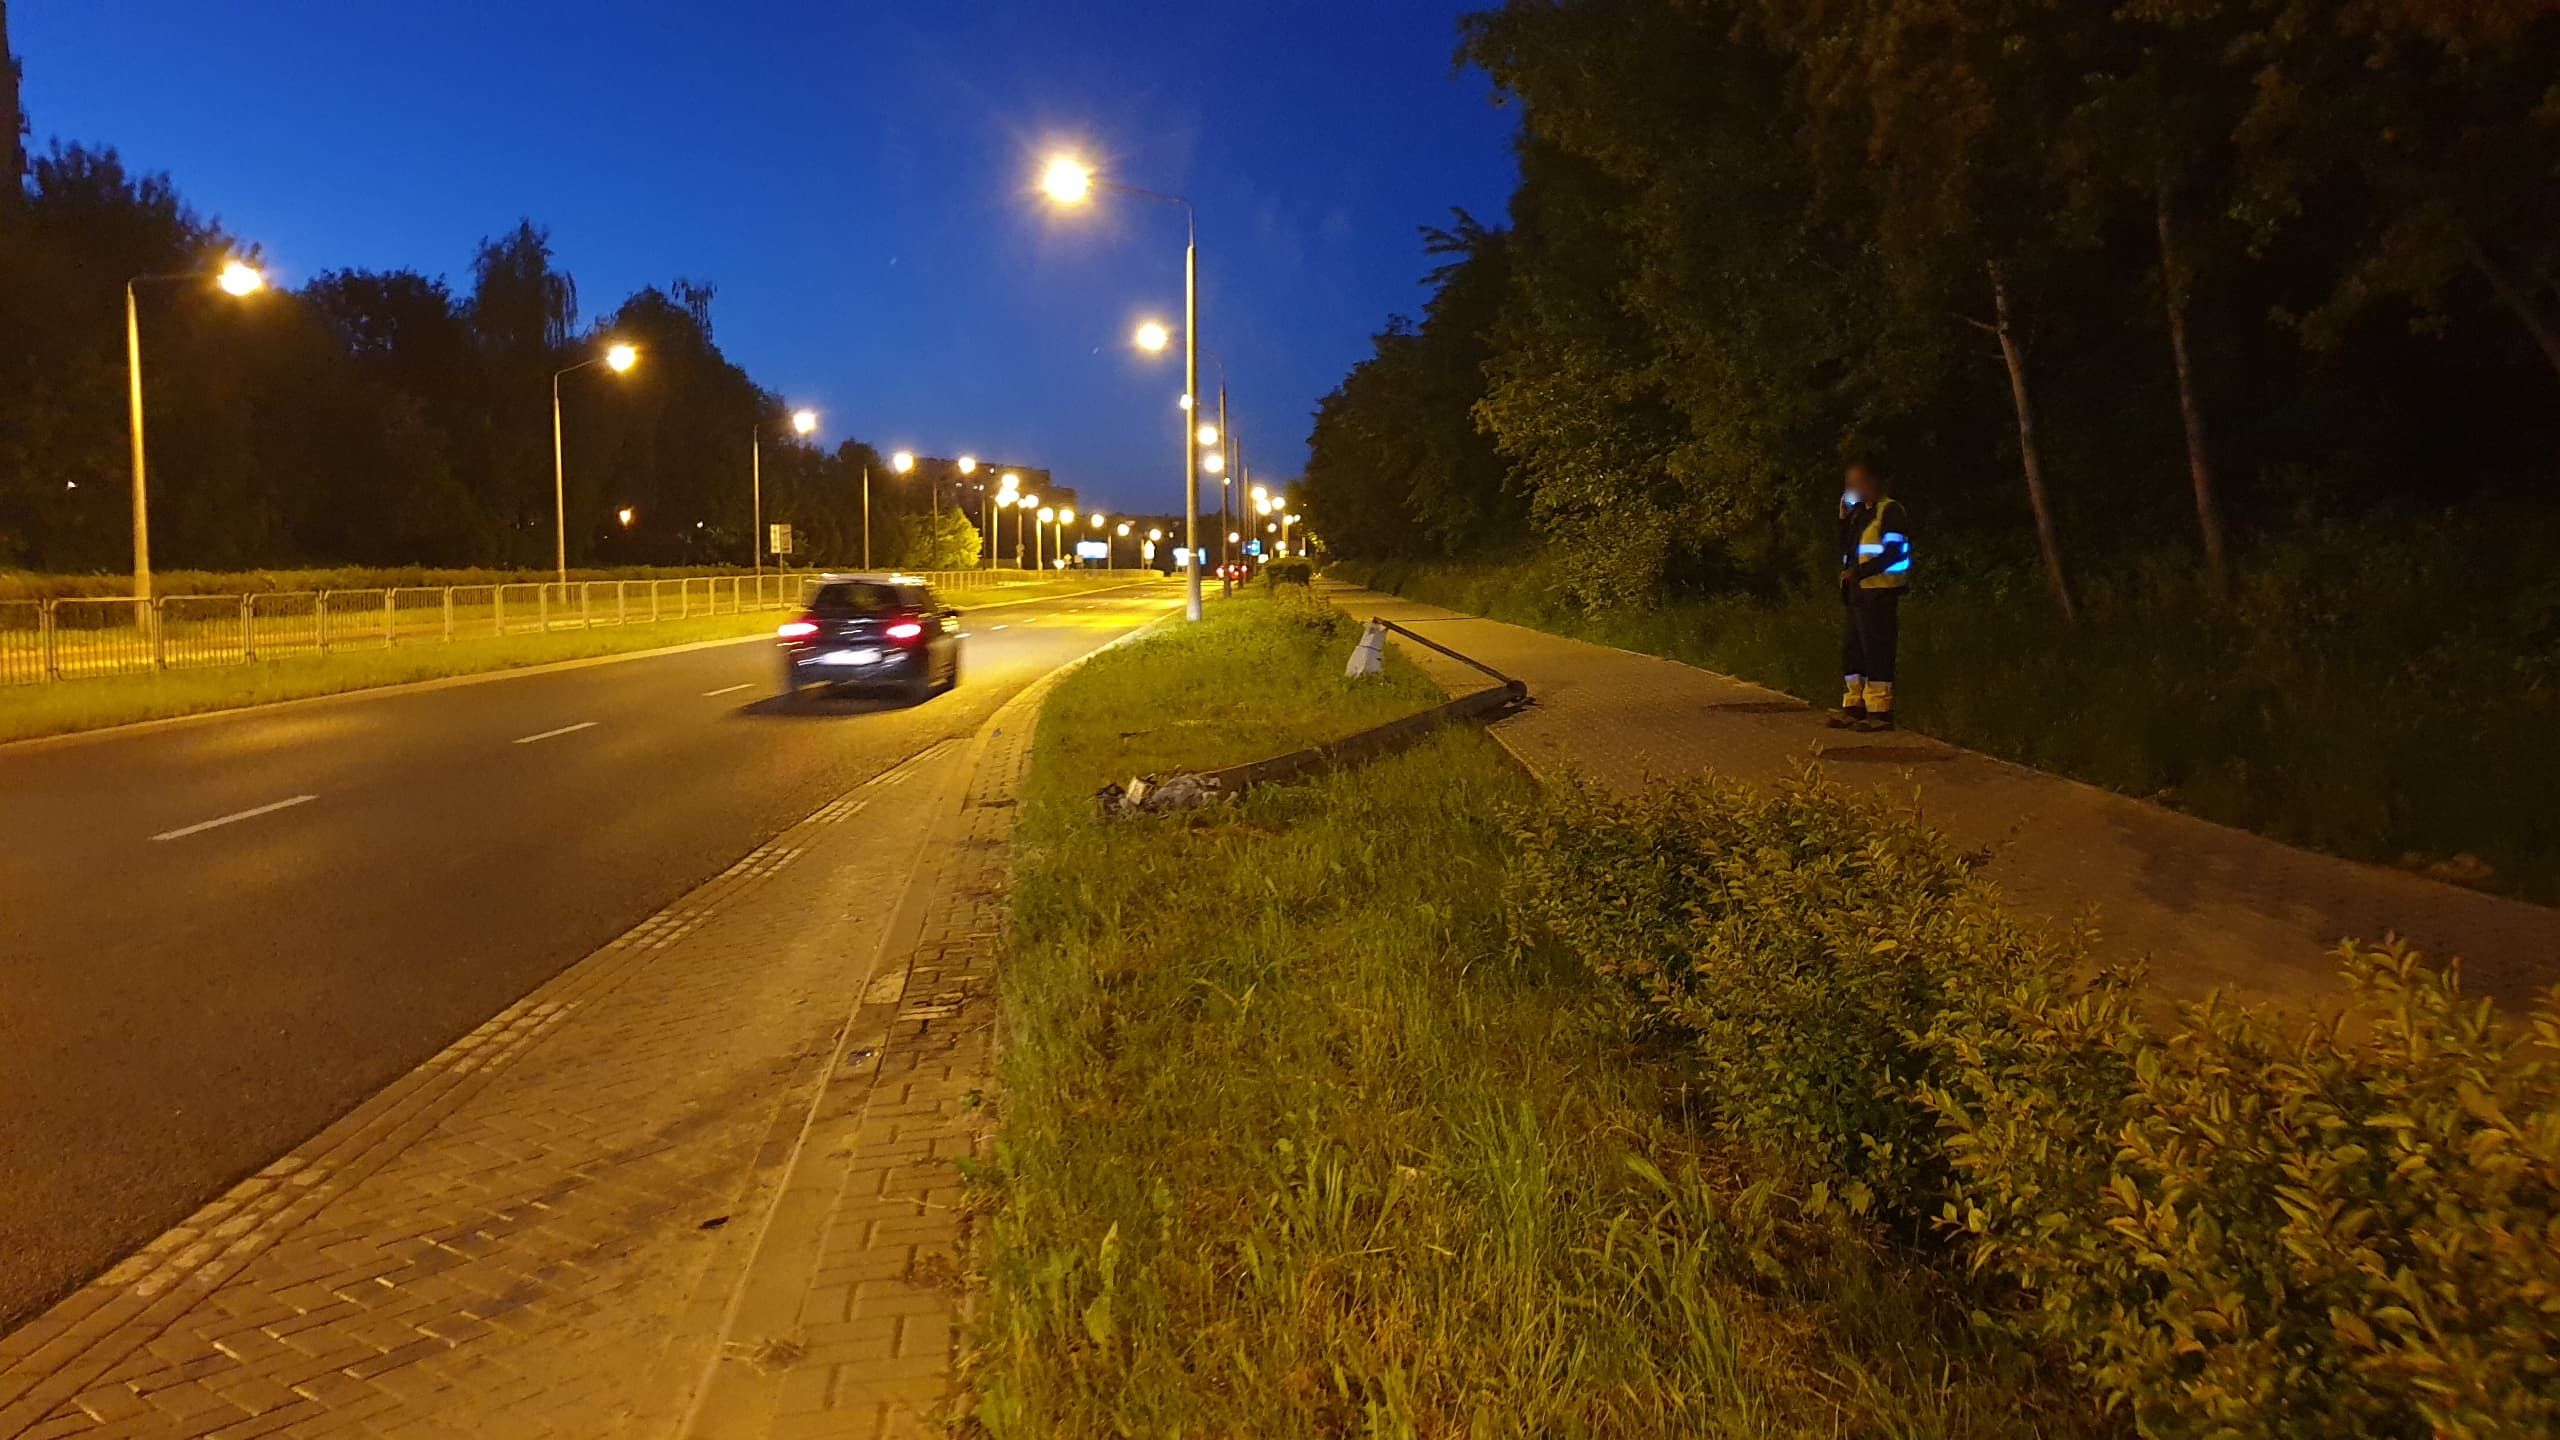 Kierowca zasłabł w trakcie jazdy. Skoda uderzyła w słup latarni (zdjęcia)